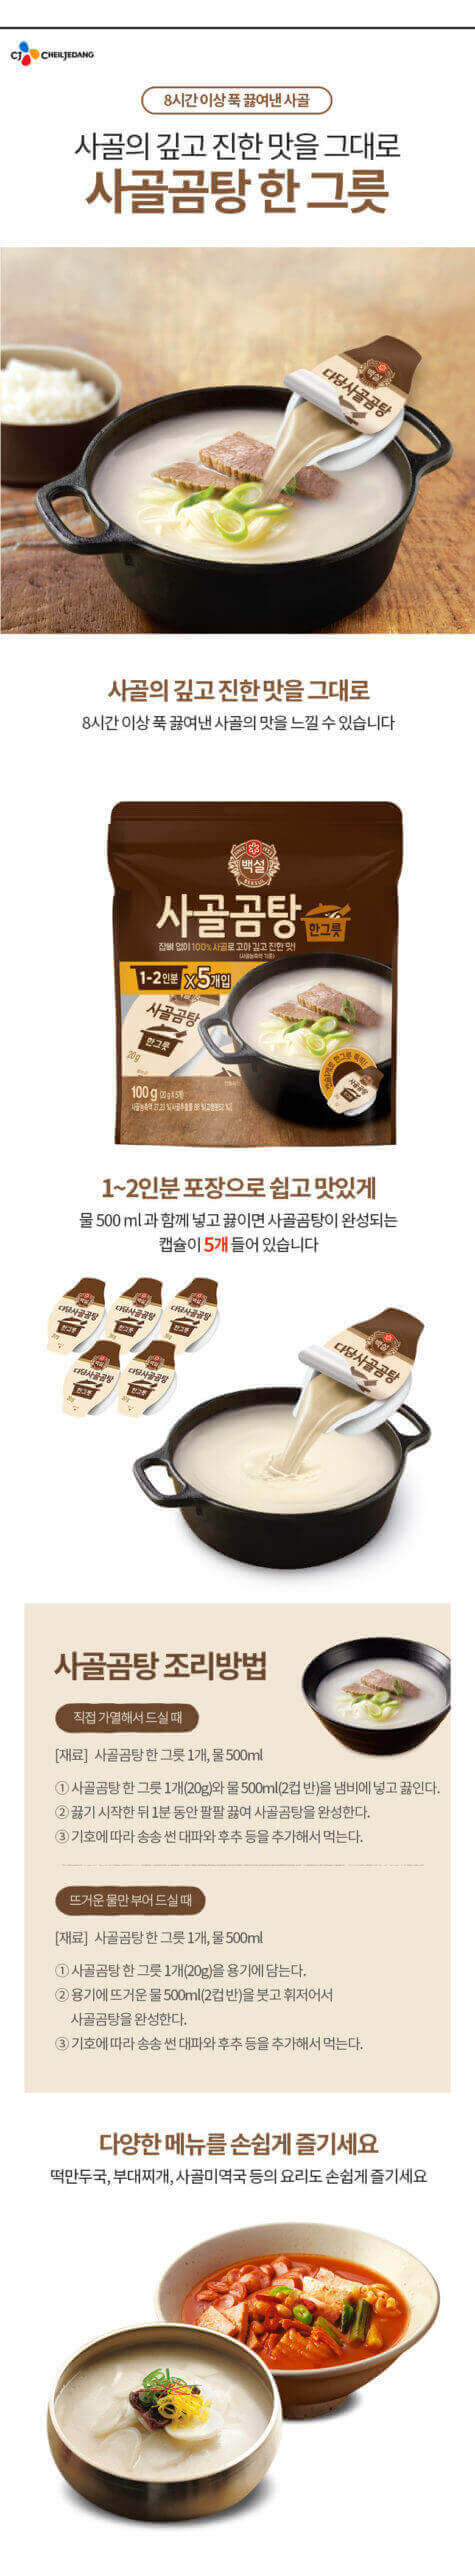 韓國食品-[CJ] 白雪 牛骨湯濃縮裝 100g